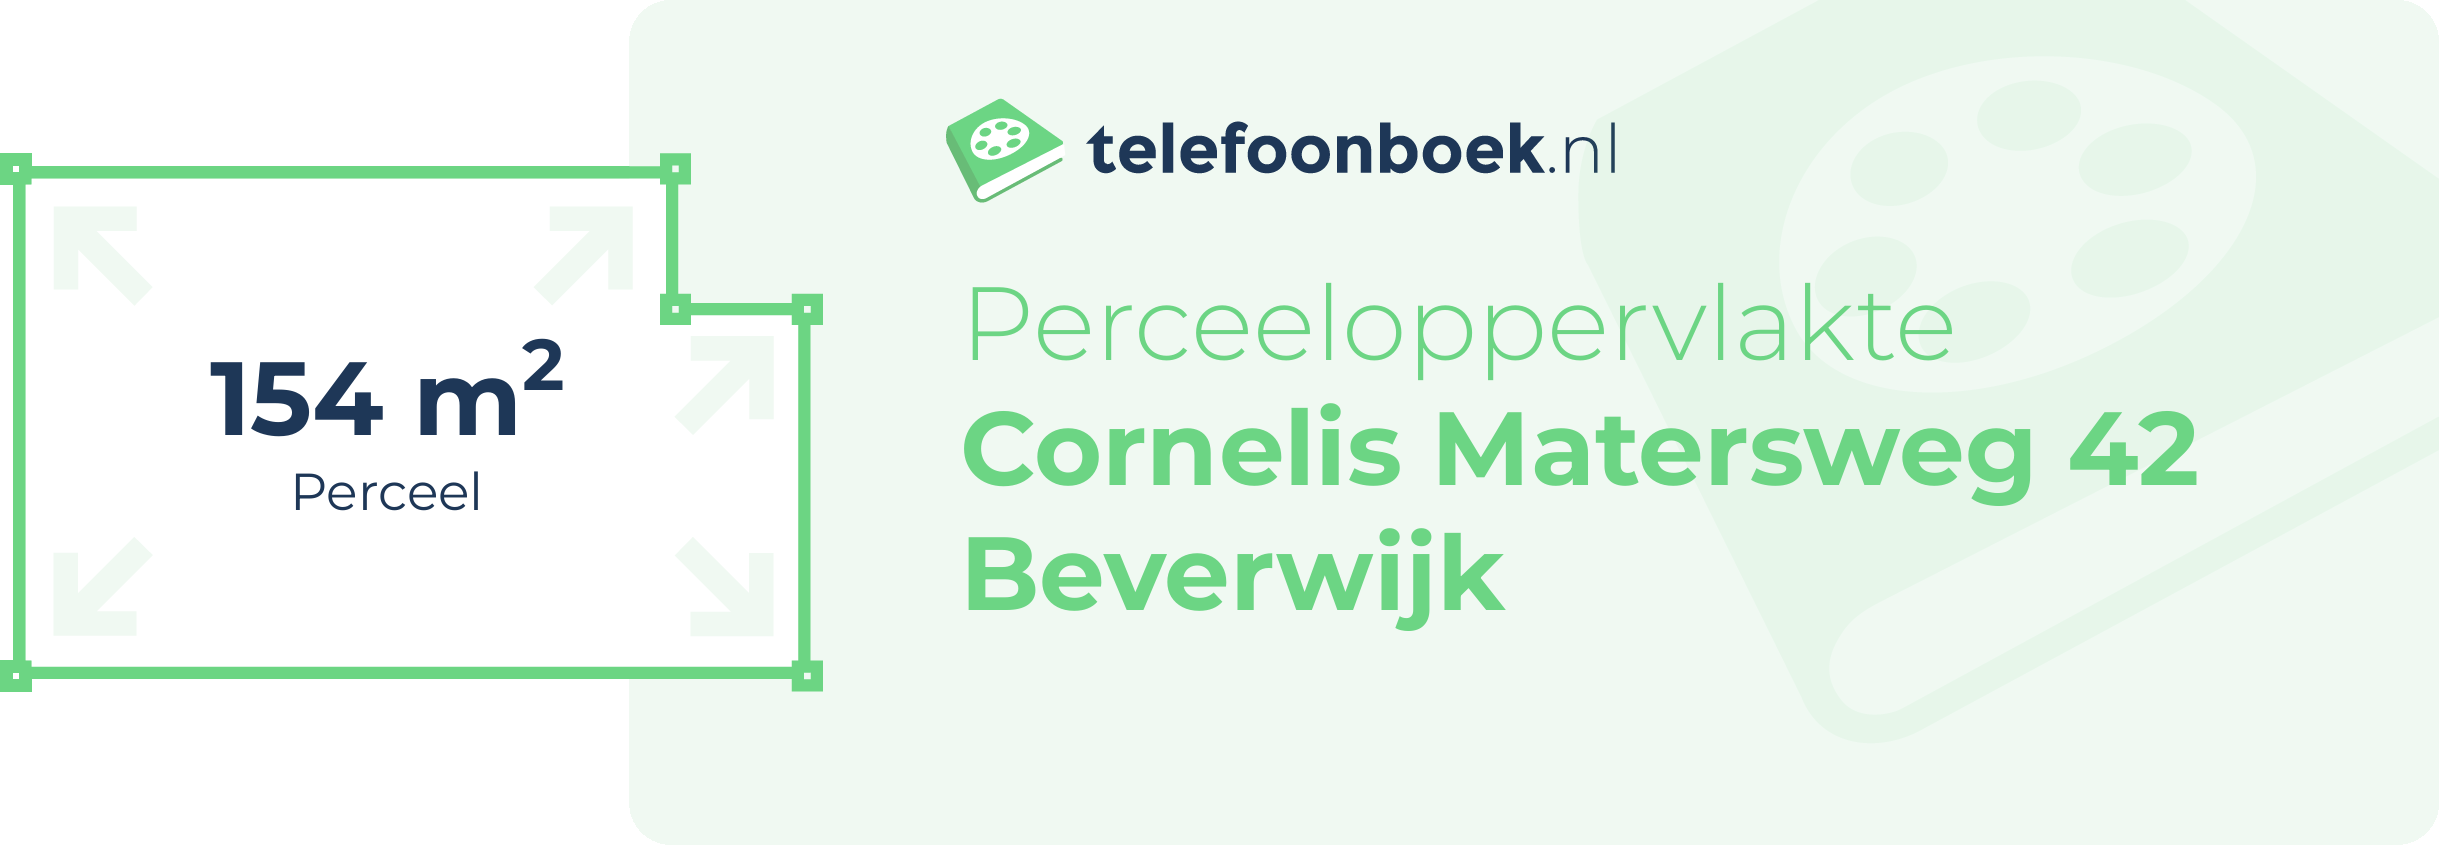 Perceeloppervlakte Cornelis Matersweg 42 Beverwijk